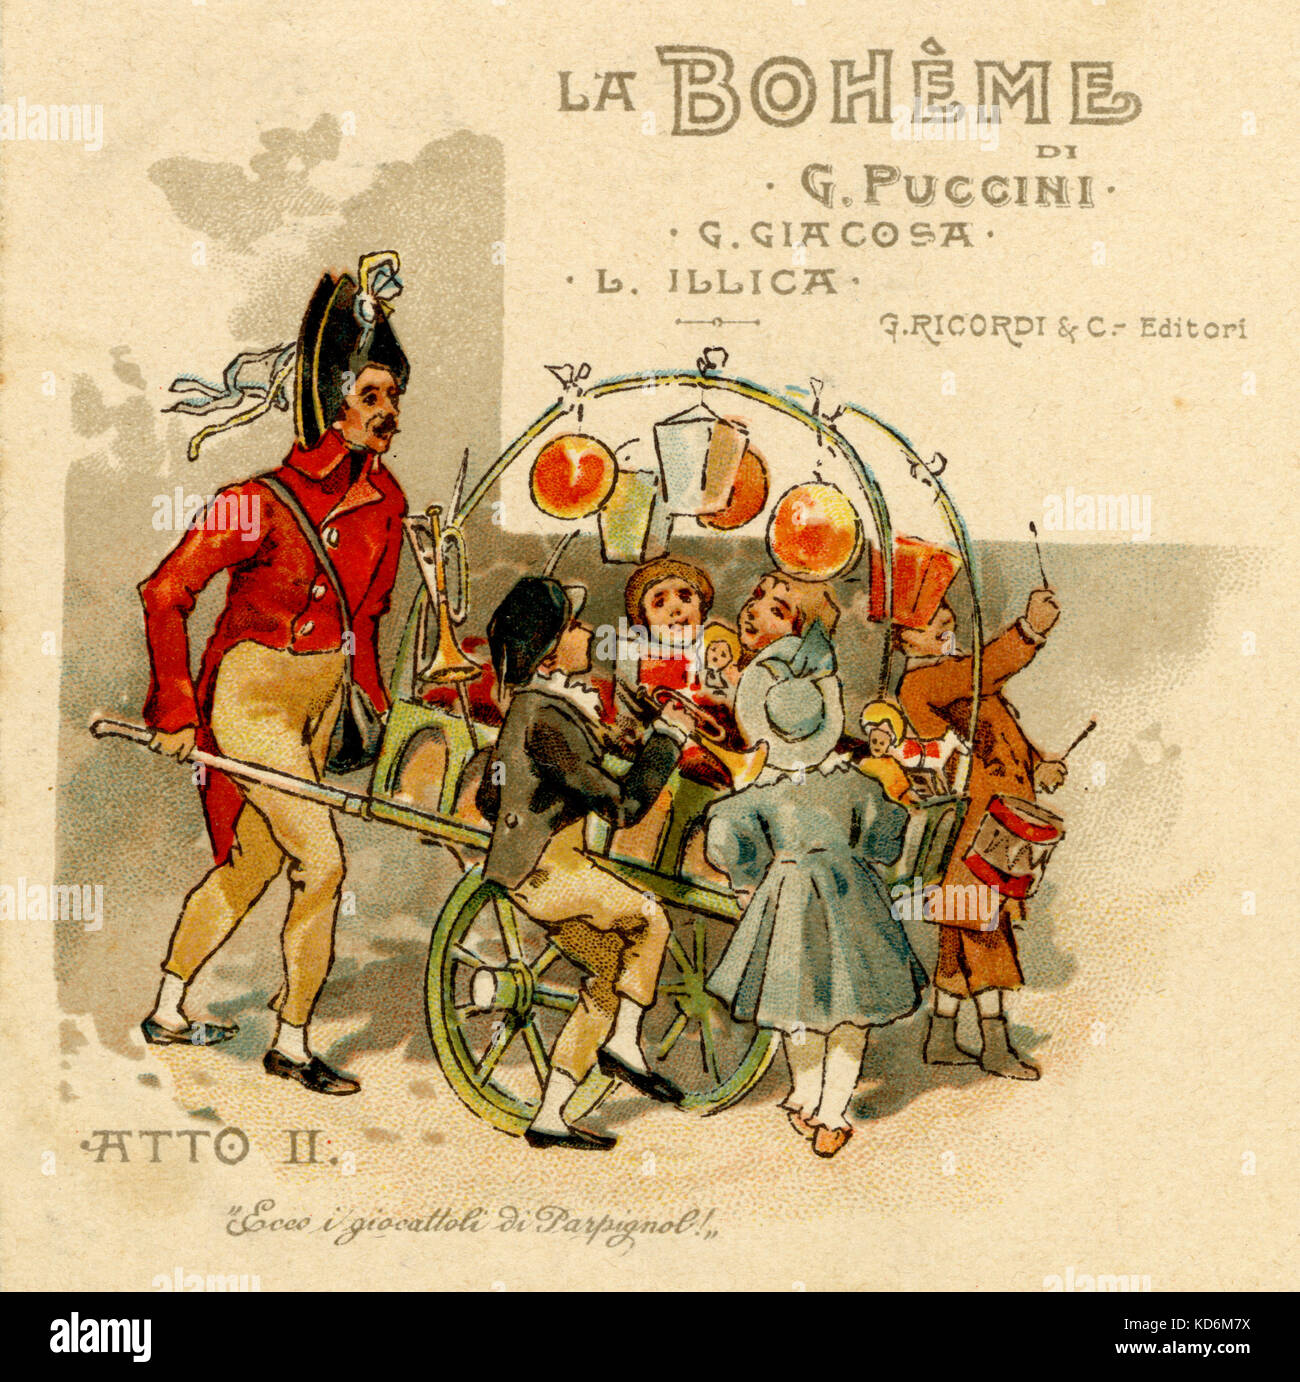 Abbildung für Puccinis "La Bohème", Act II. Kinder spielen Instrumente (Trompete, Trommel) um Warenkorb durch französische Soldaten geschoben. Laternen. Bildunterschrift lautet: "Hier kommen die Spielzeug von Parpignol!" Postkarte veröffentlicht durch Ricordi. Italienischer Komponist, 1858 - 1924. Stockfoto